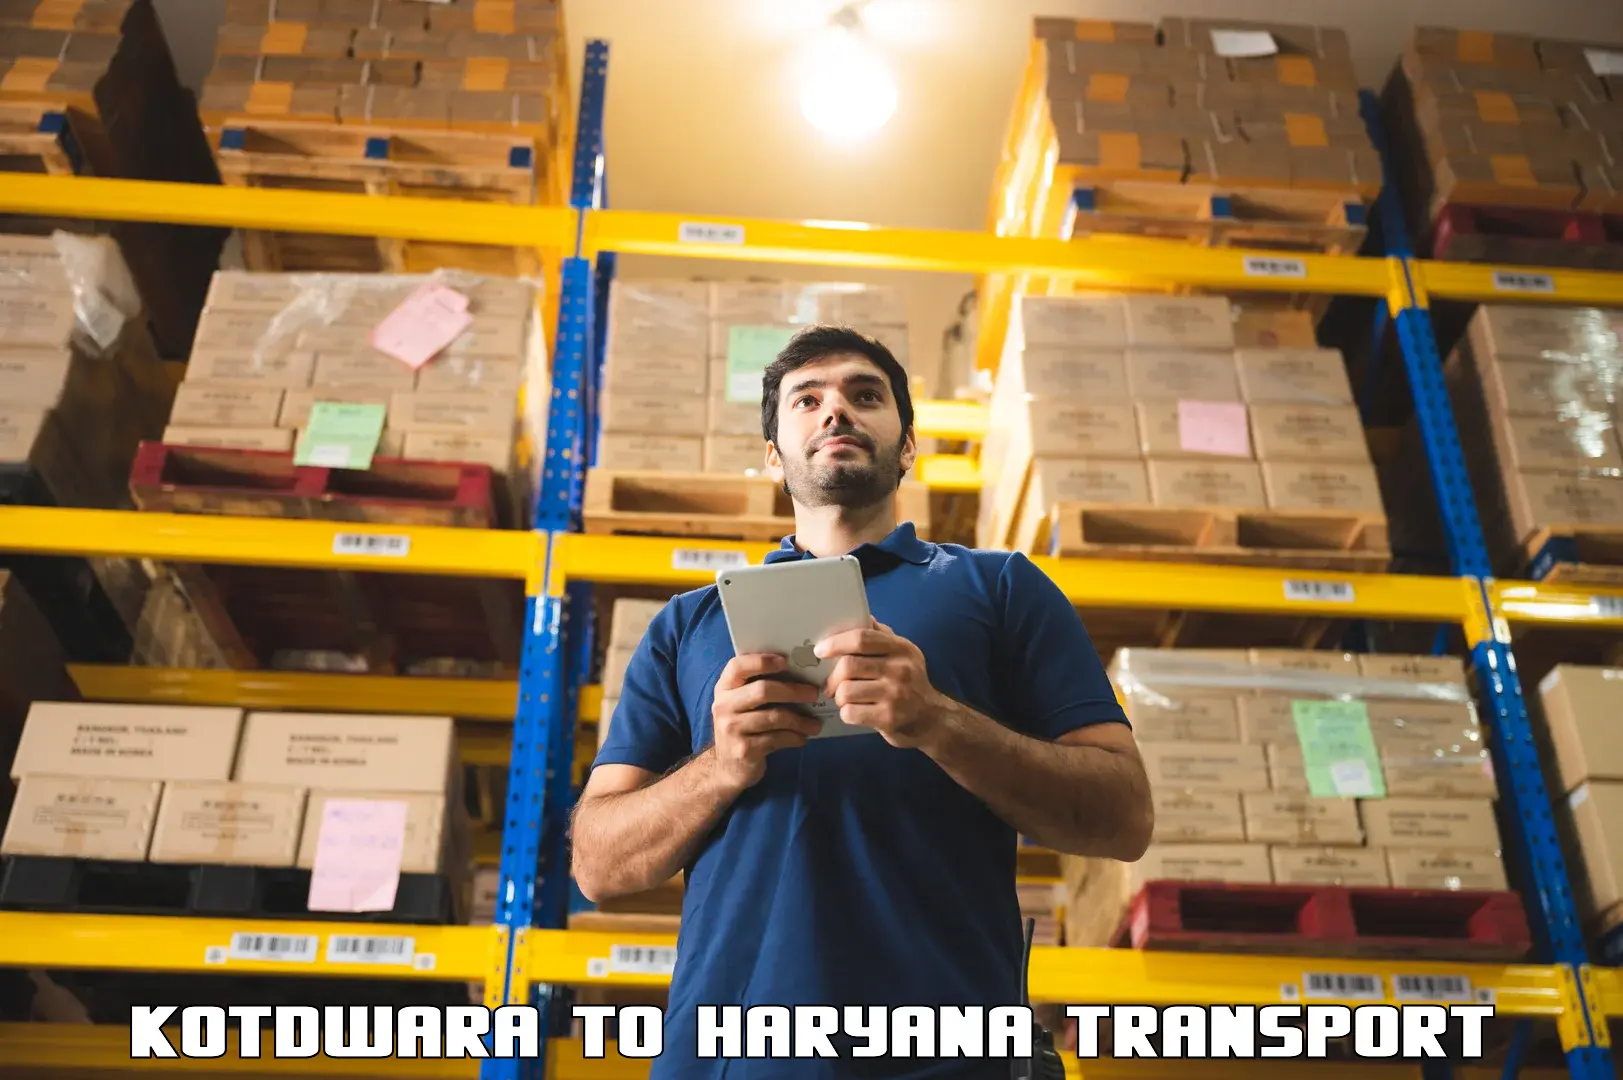 Transport shared services Kotdwara to Haryana